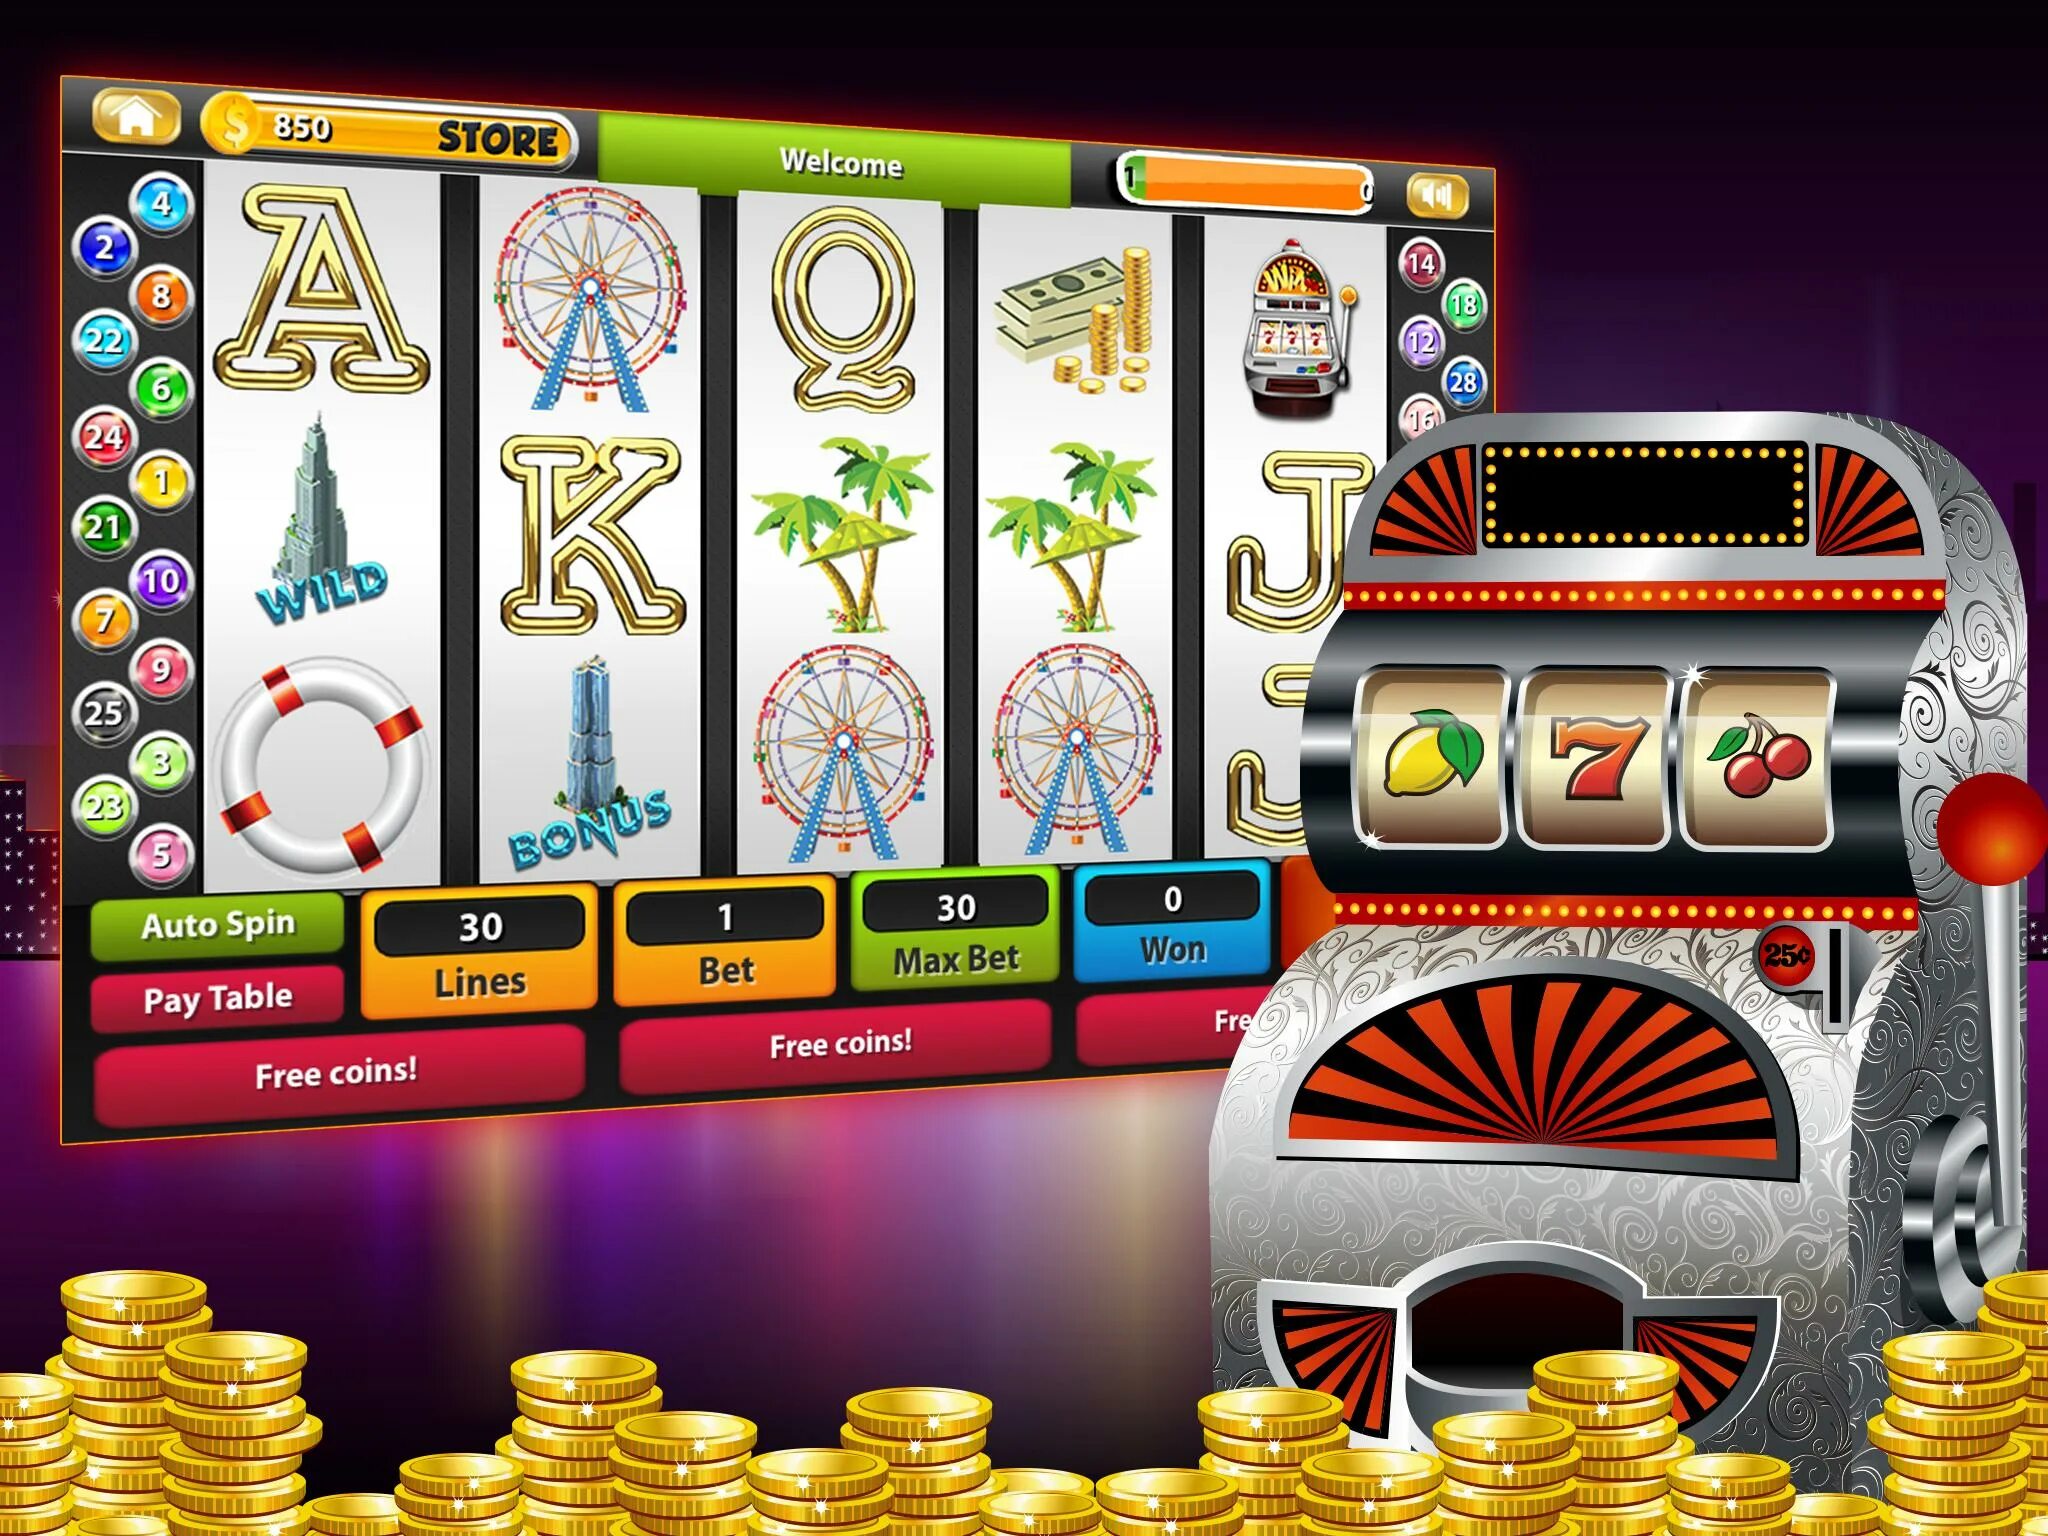 Слот машина game slot machines org ru. Игровой аппарат Джек пот. Игровой автомат казино. Игровые автоматы на реальные деньги. Игральные автоматы с деньгами.